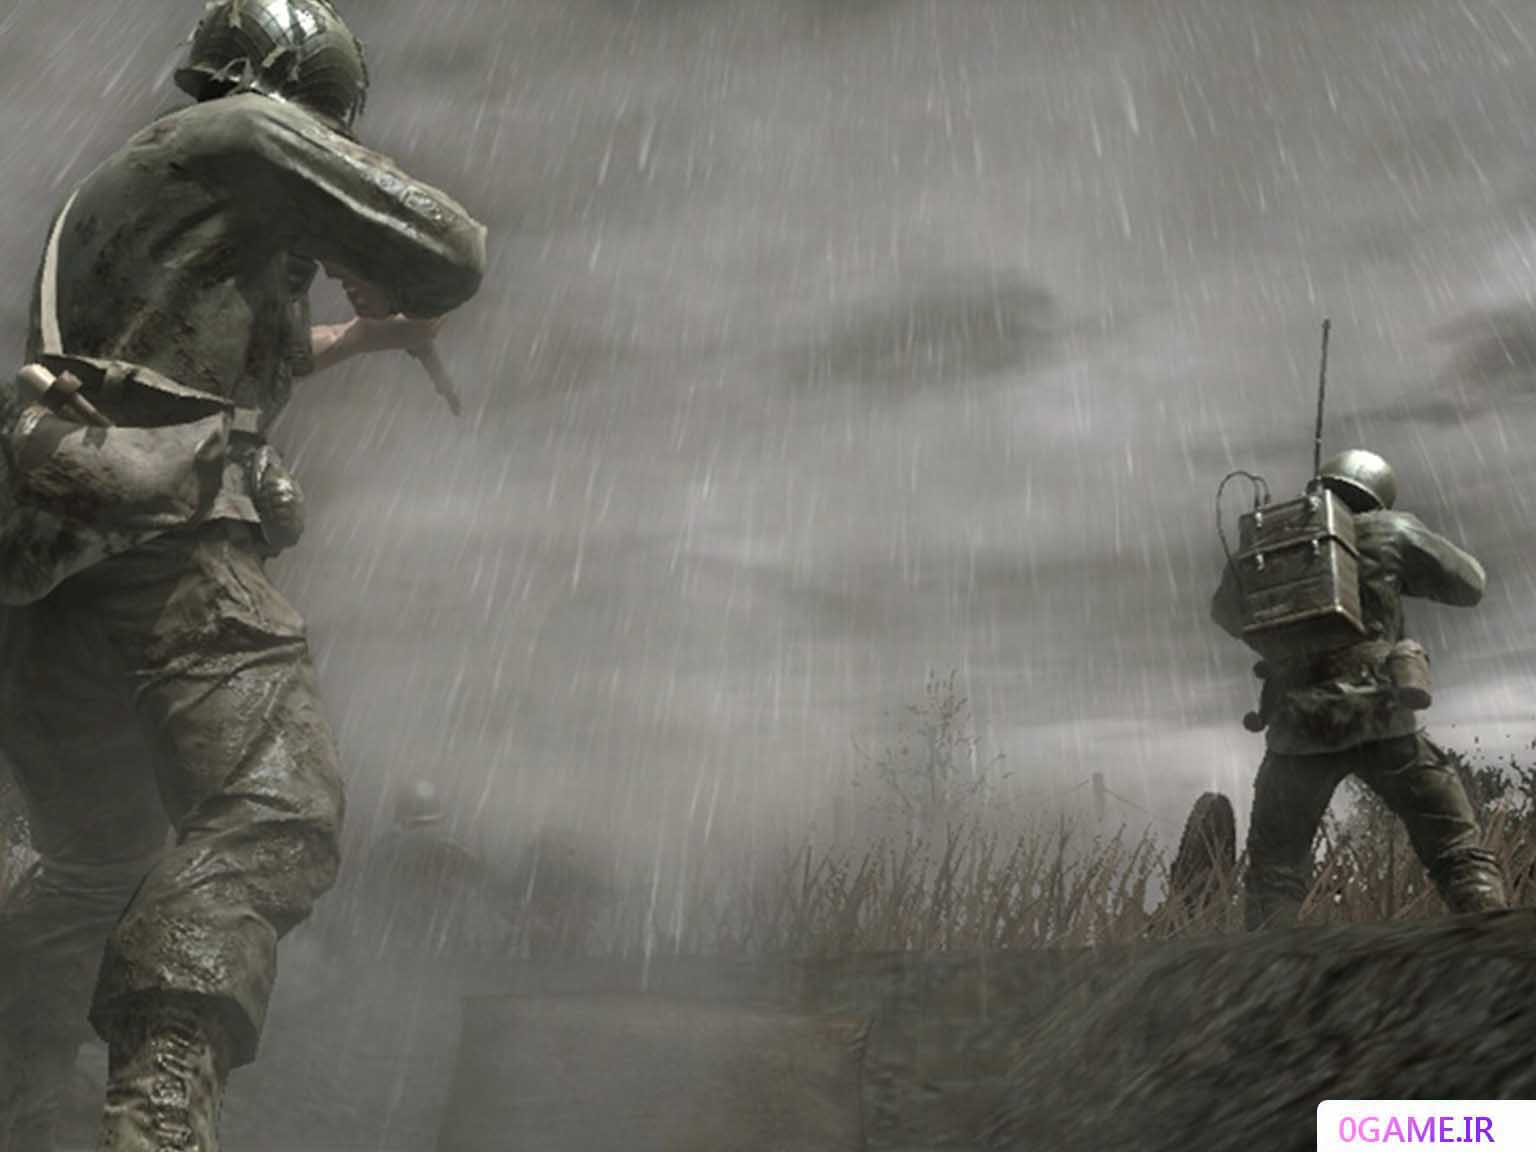 دانلود بازی کالاف دیوتی 5 (Call of Duty: World at War) نسخه کامل برای کامپیوتر